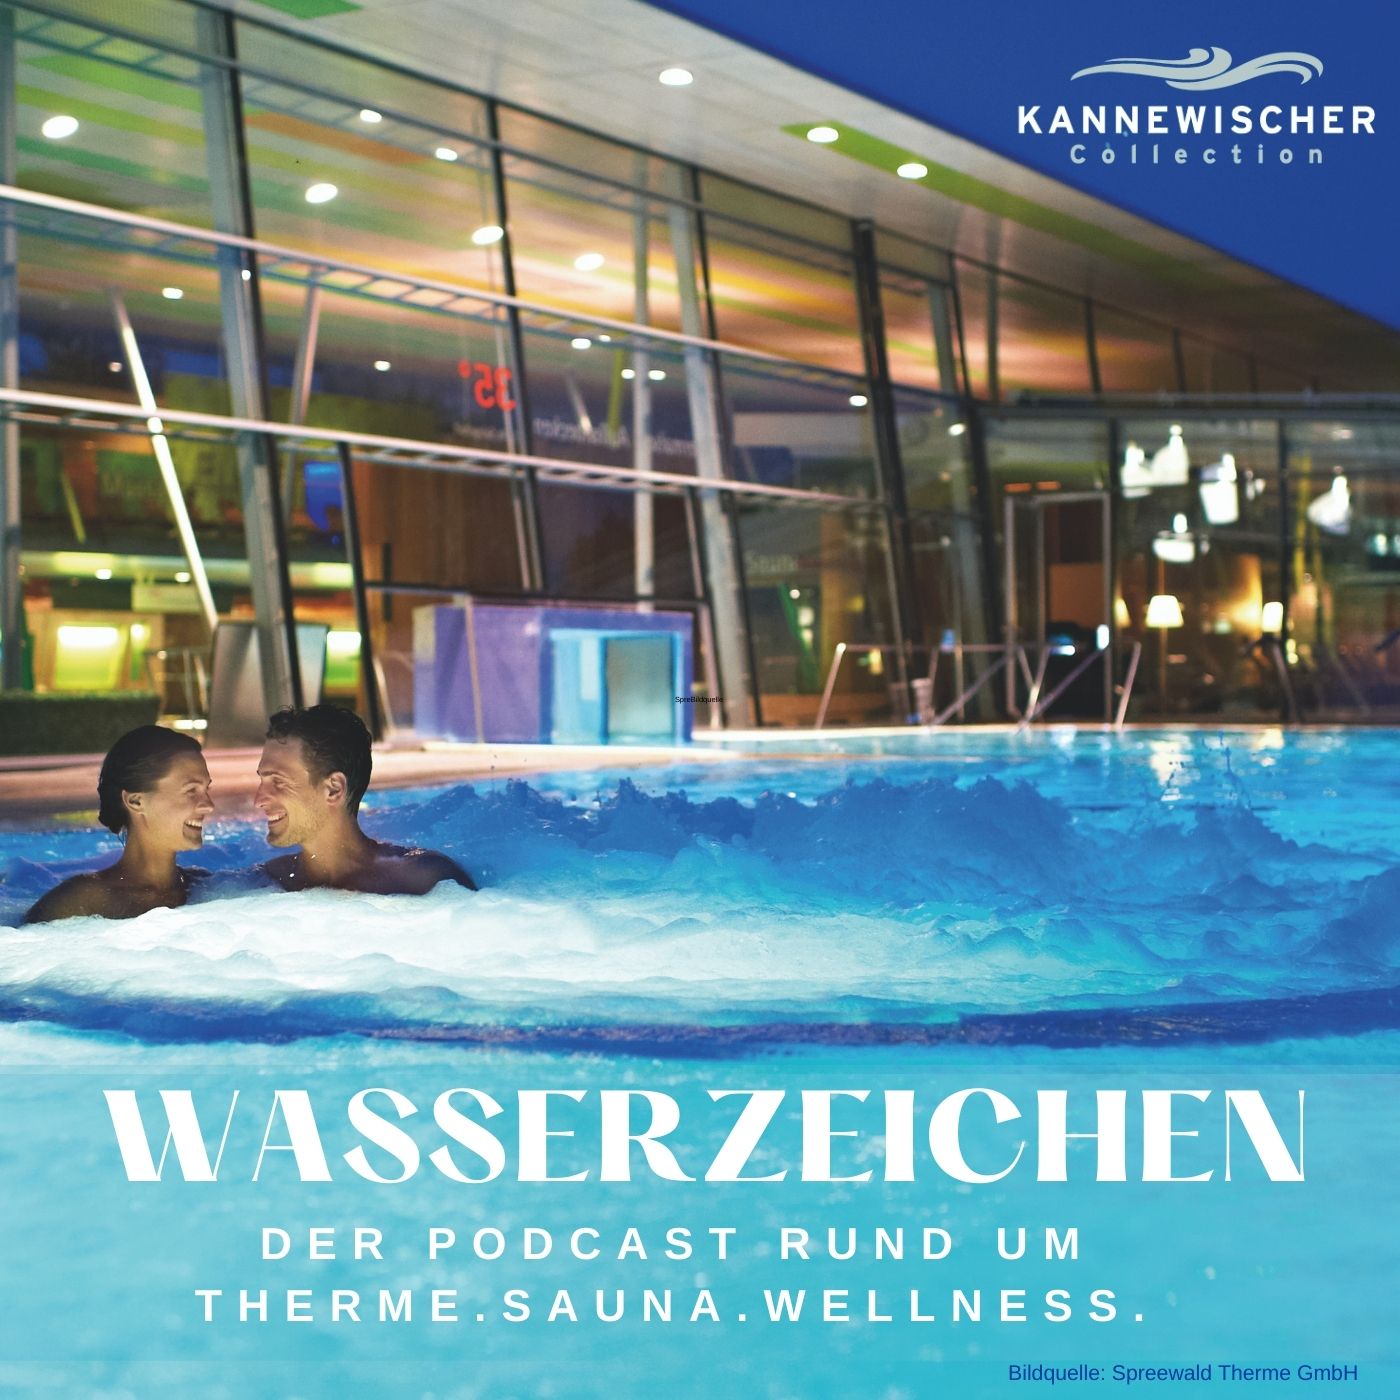 Wasserzeichen - der Podcast der Kannewischer Collection rund um Therme, Sauna und Wellness